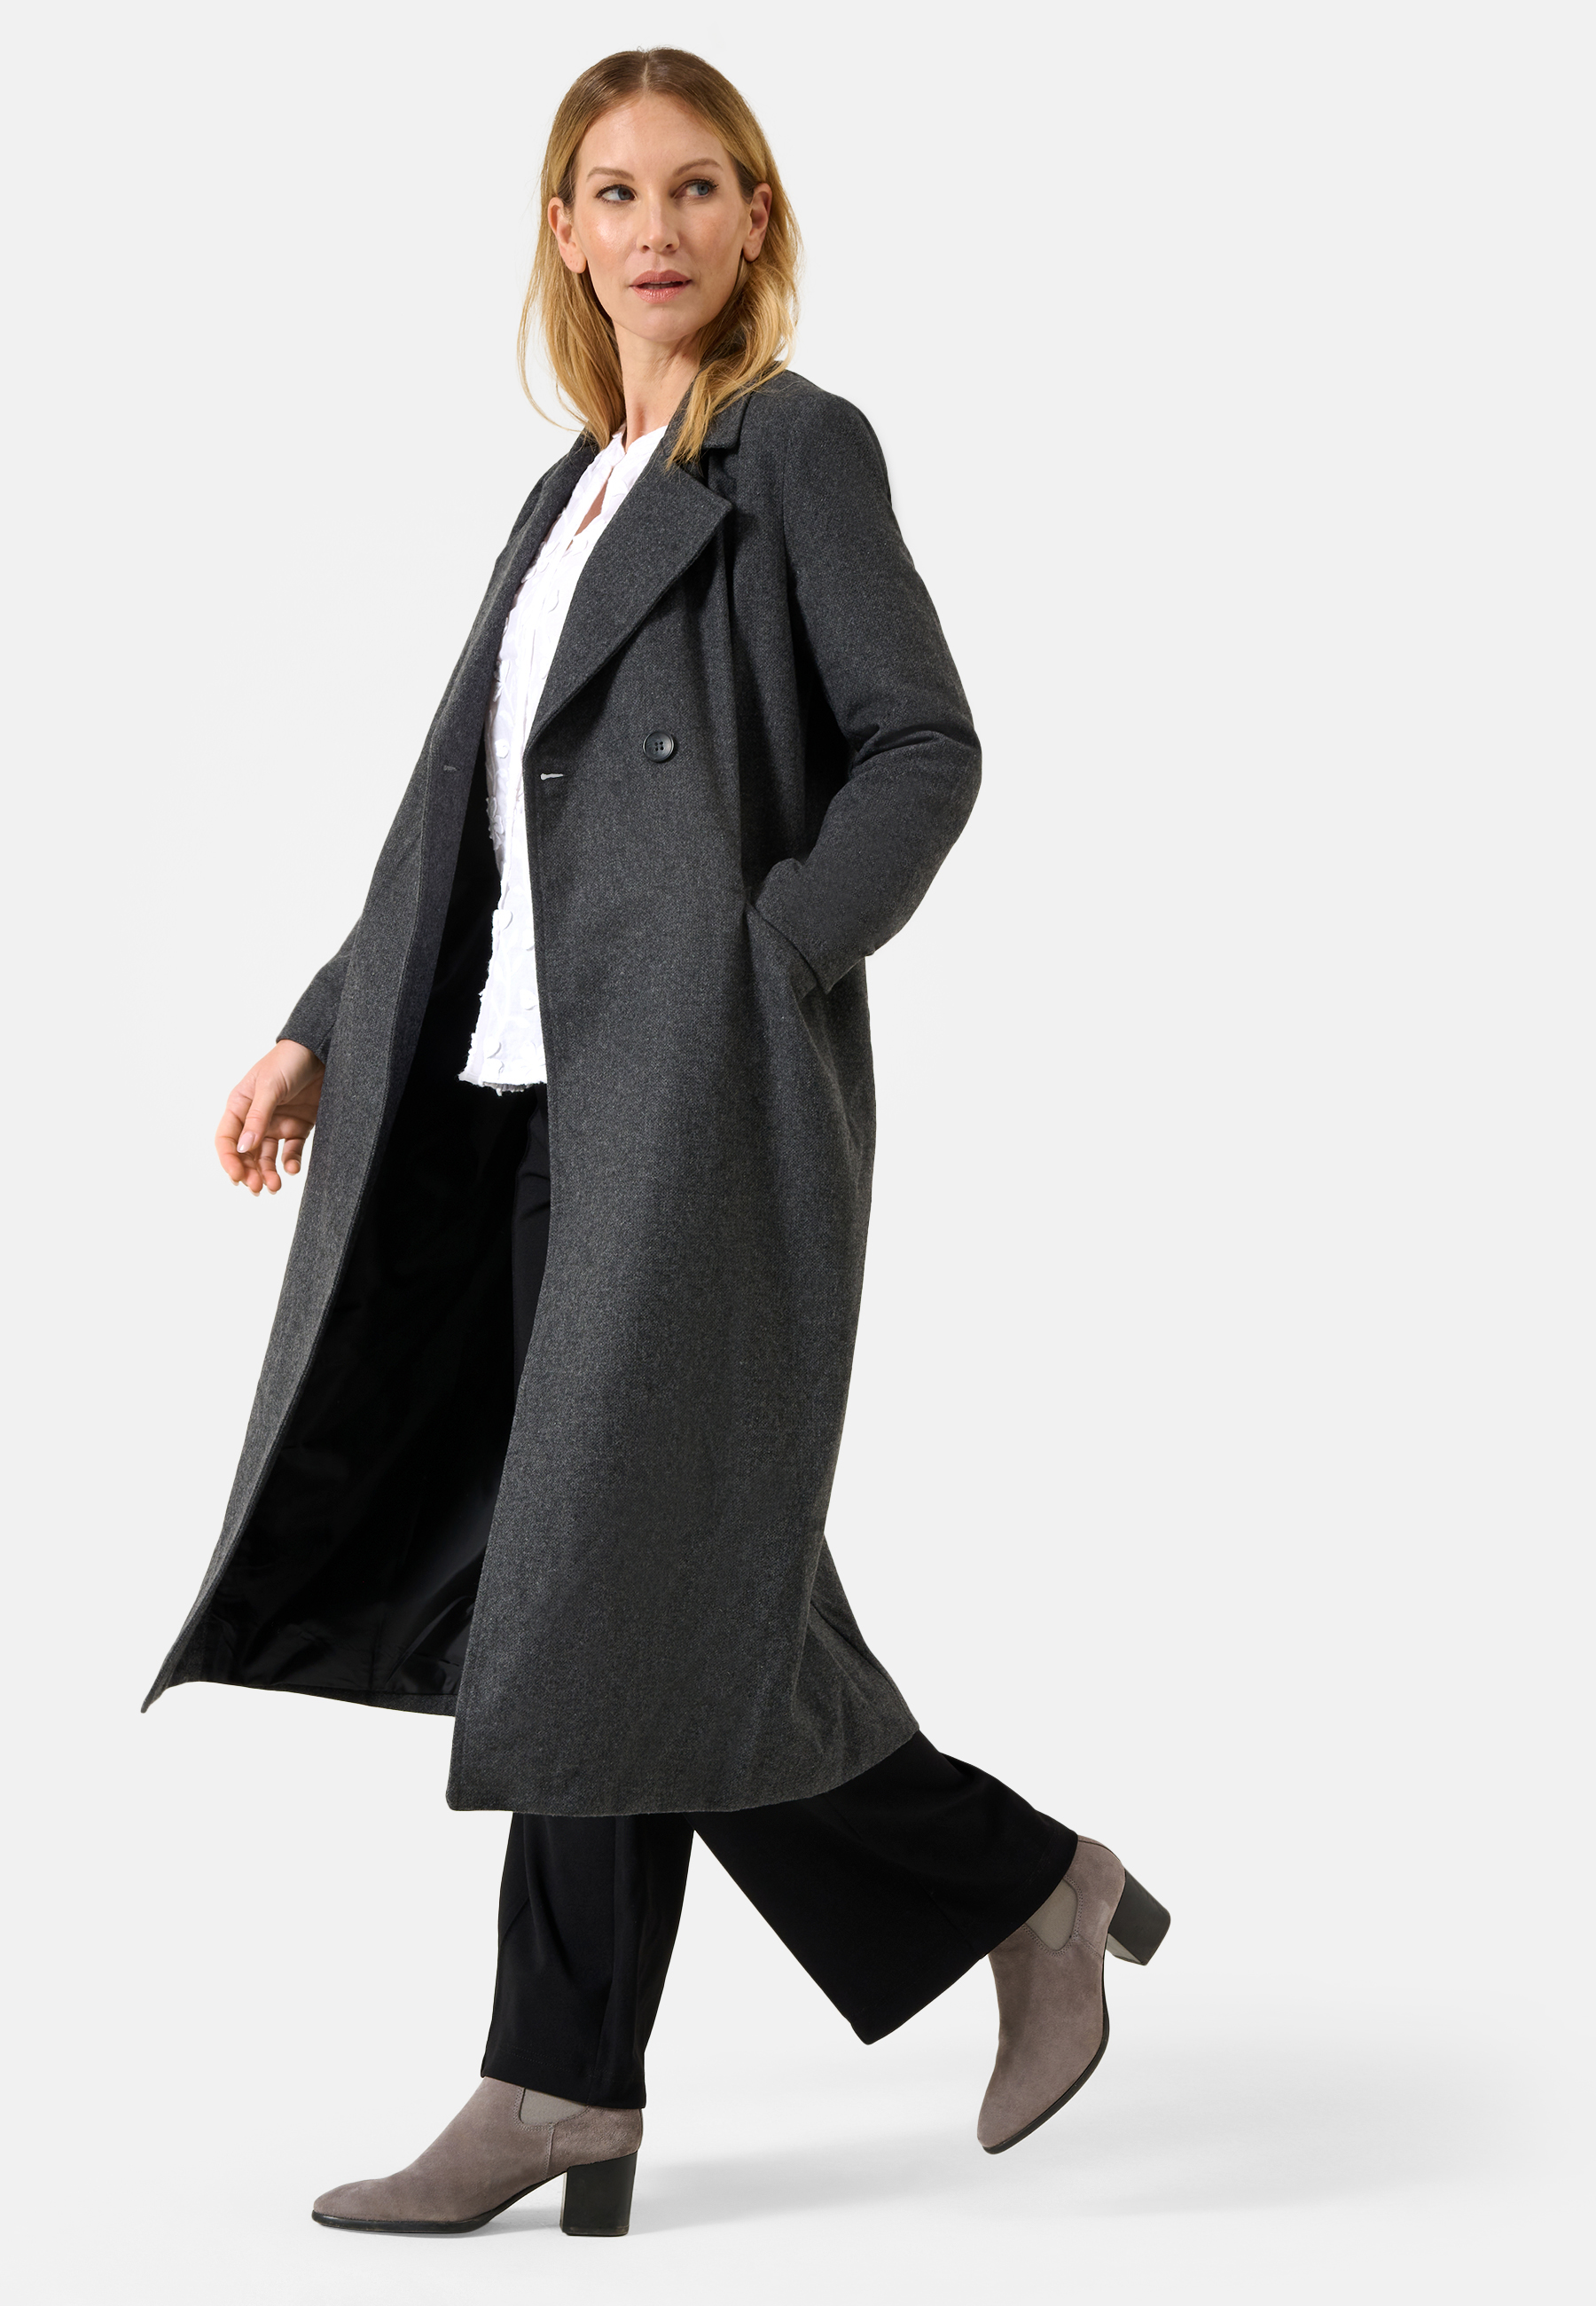 Damen Textil Mantel Alberta in Grau von Ricano, Detailansicht seitlich, Reversekragen offen mit V-Ausschnitt, Einschubtasche links, Knopfverschluss oben